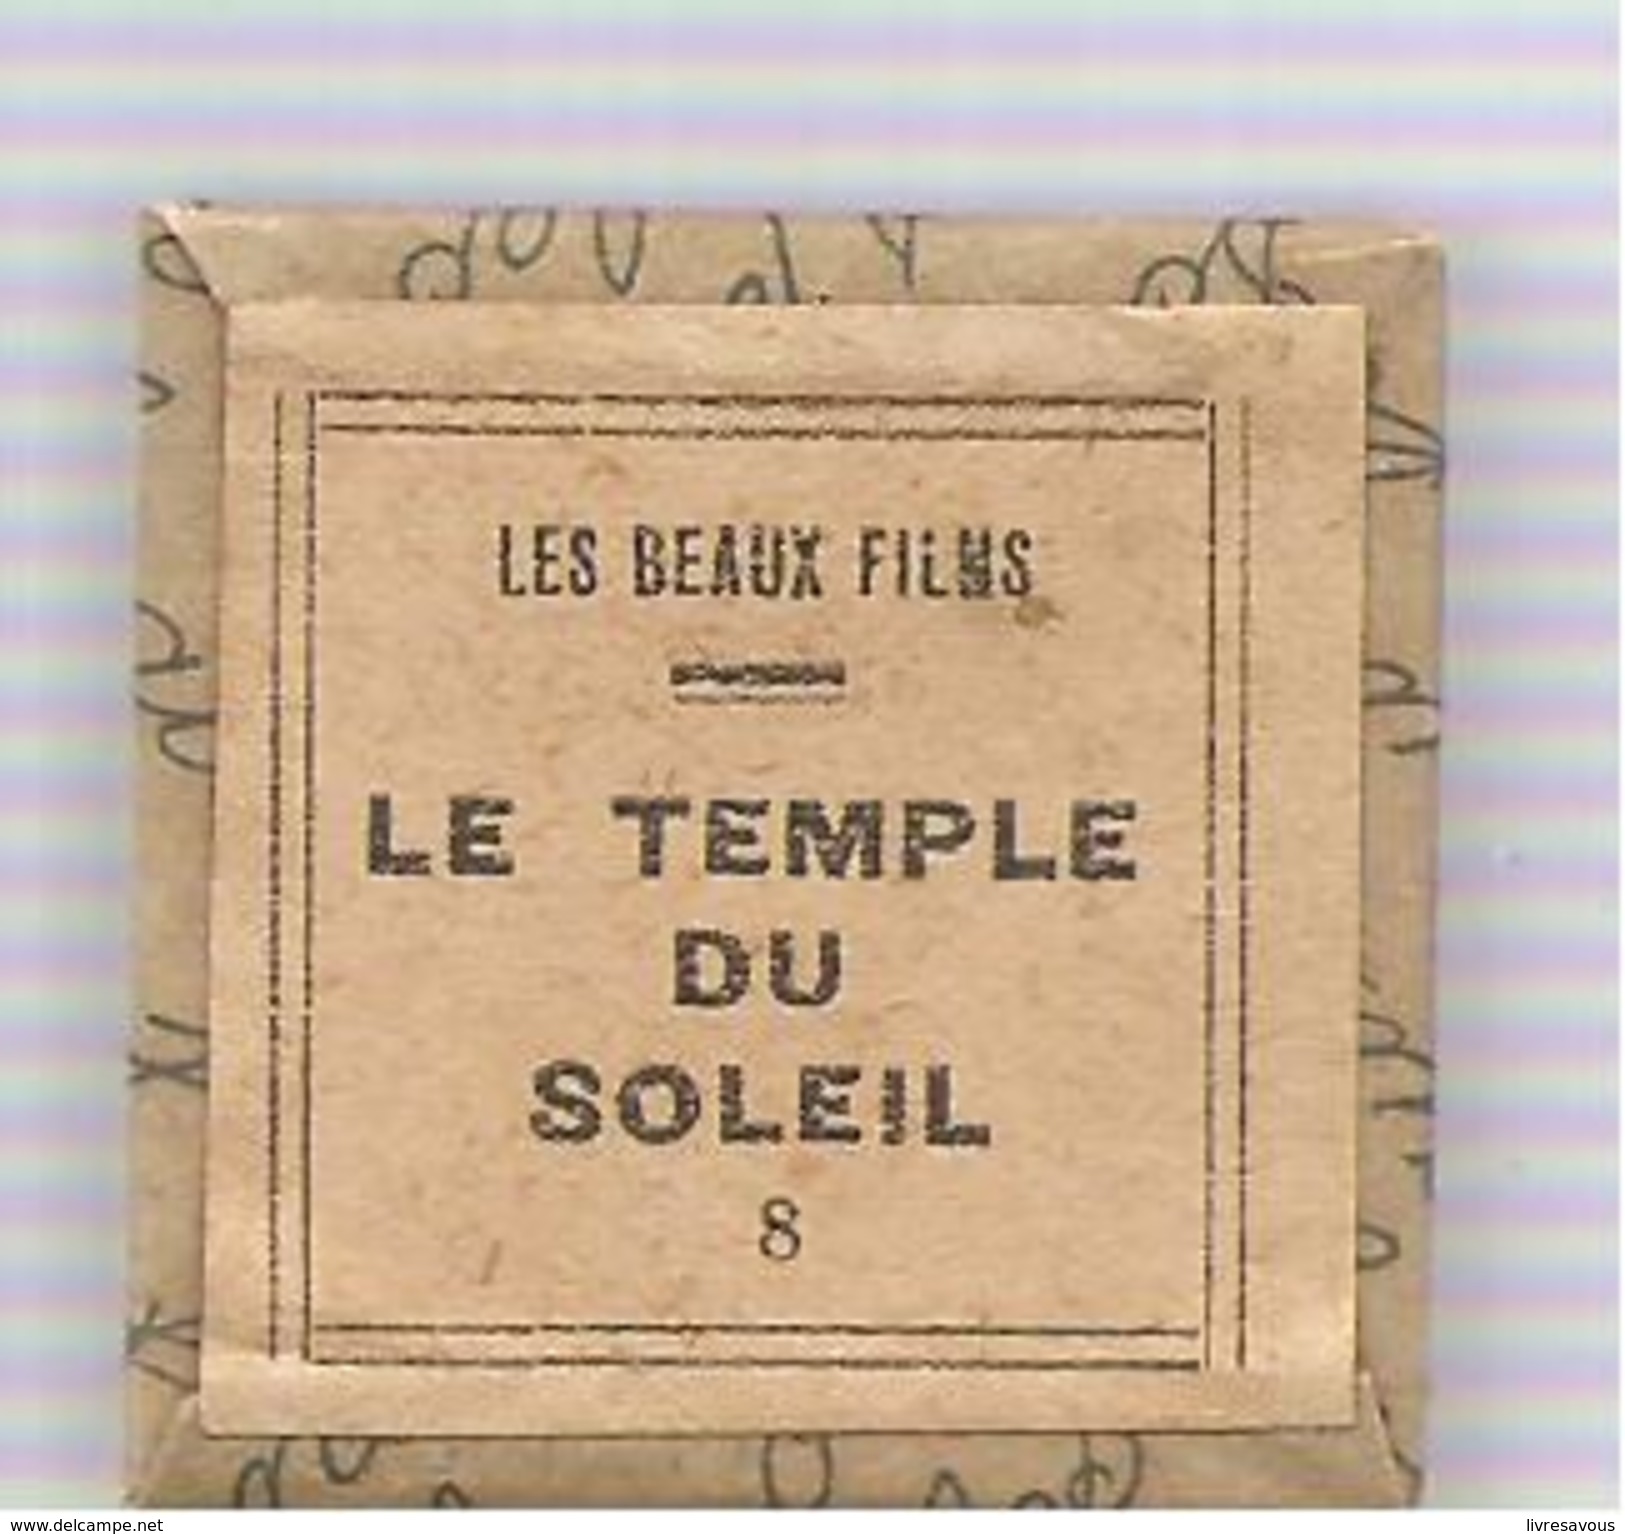 Hergé Film Fixe N°8 Tintin Et Le Temple Du Soleil D'Hergé Collection "Les Beaux Films" Des Années 1965 - 35mm -16mm - 9,5+8+S8mm Film Rolls